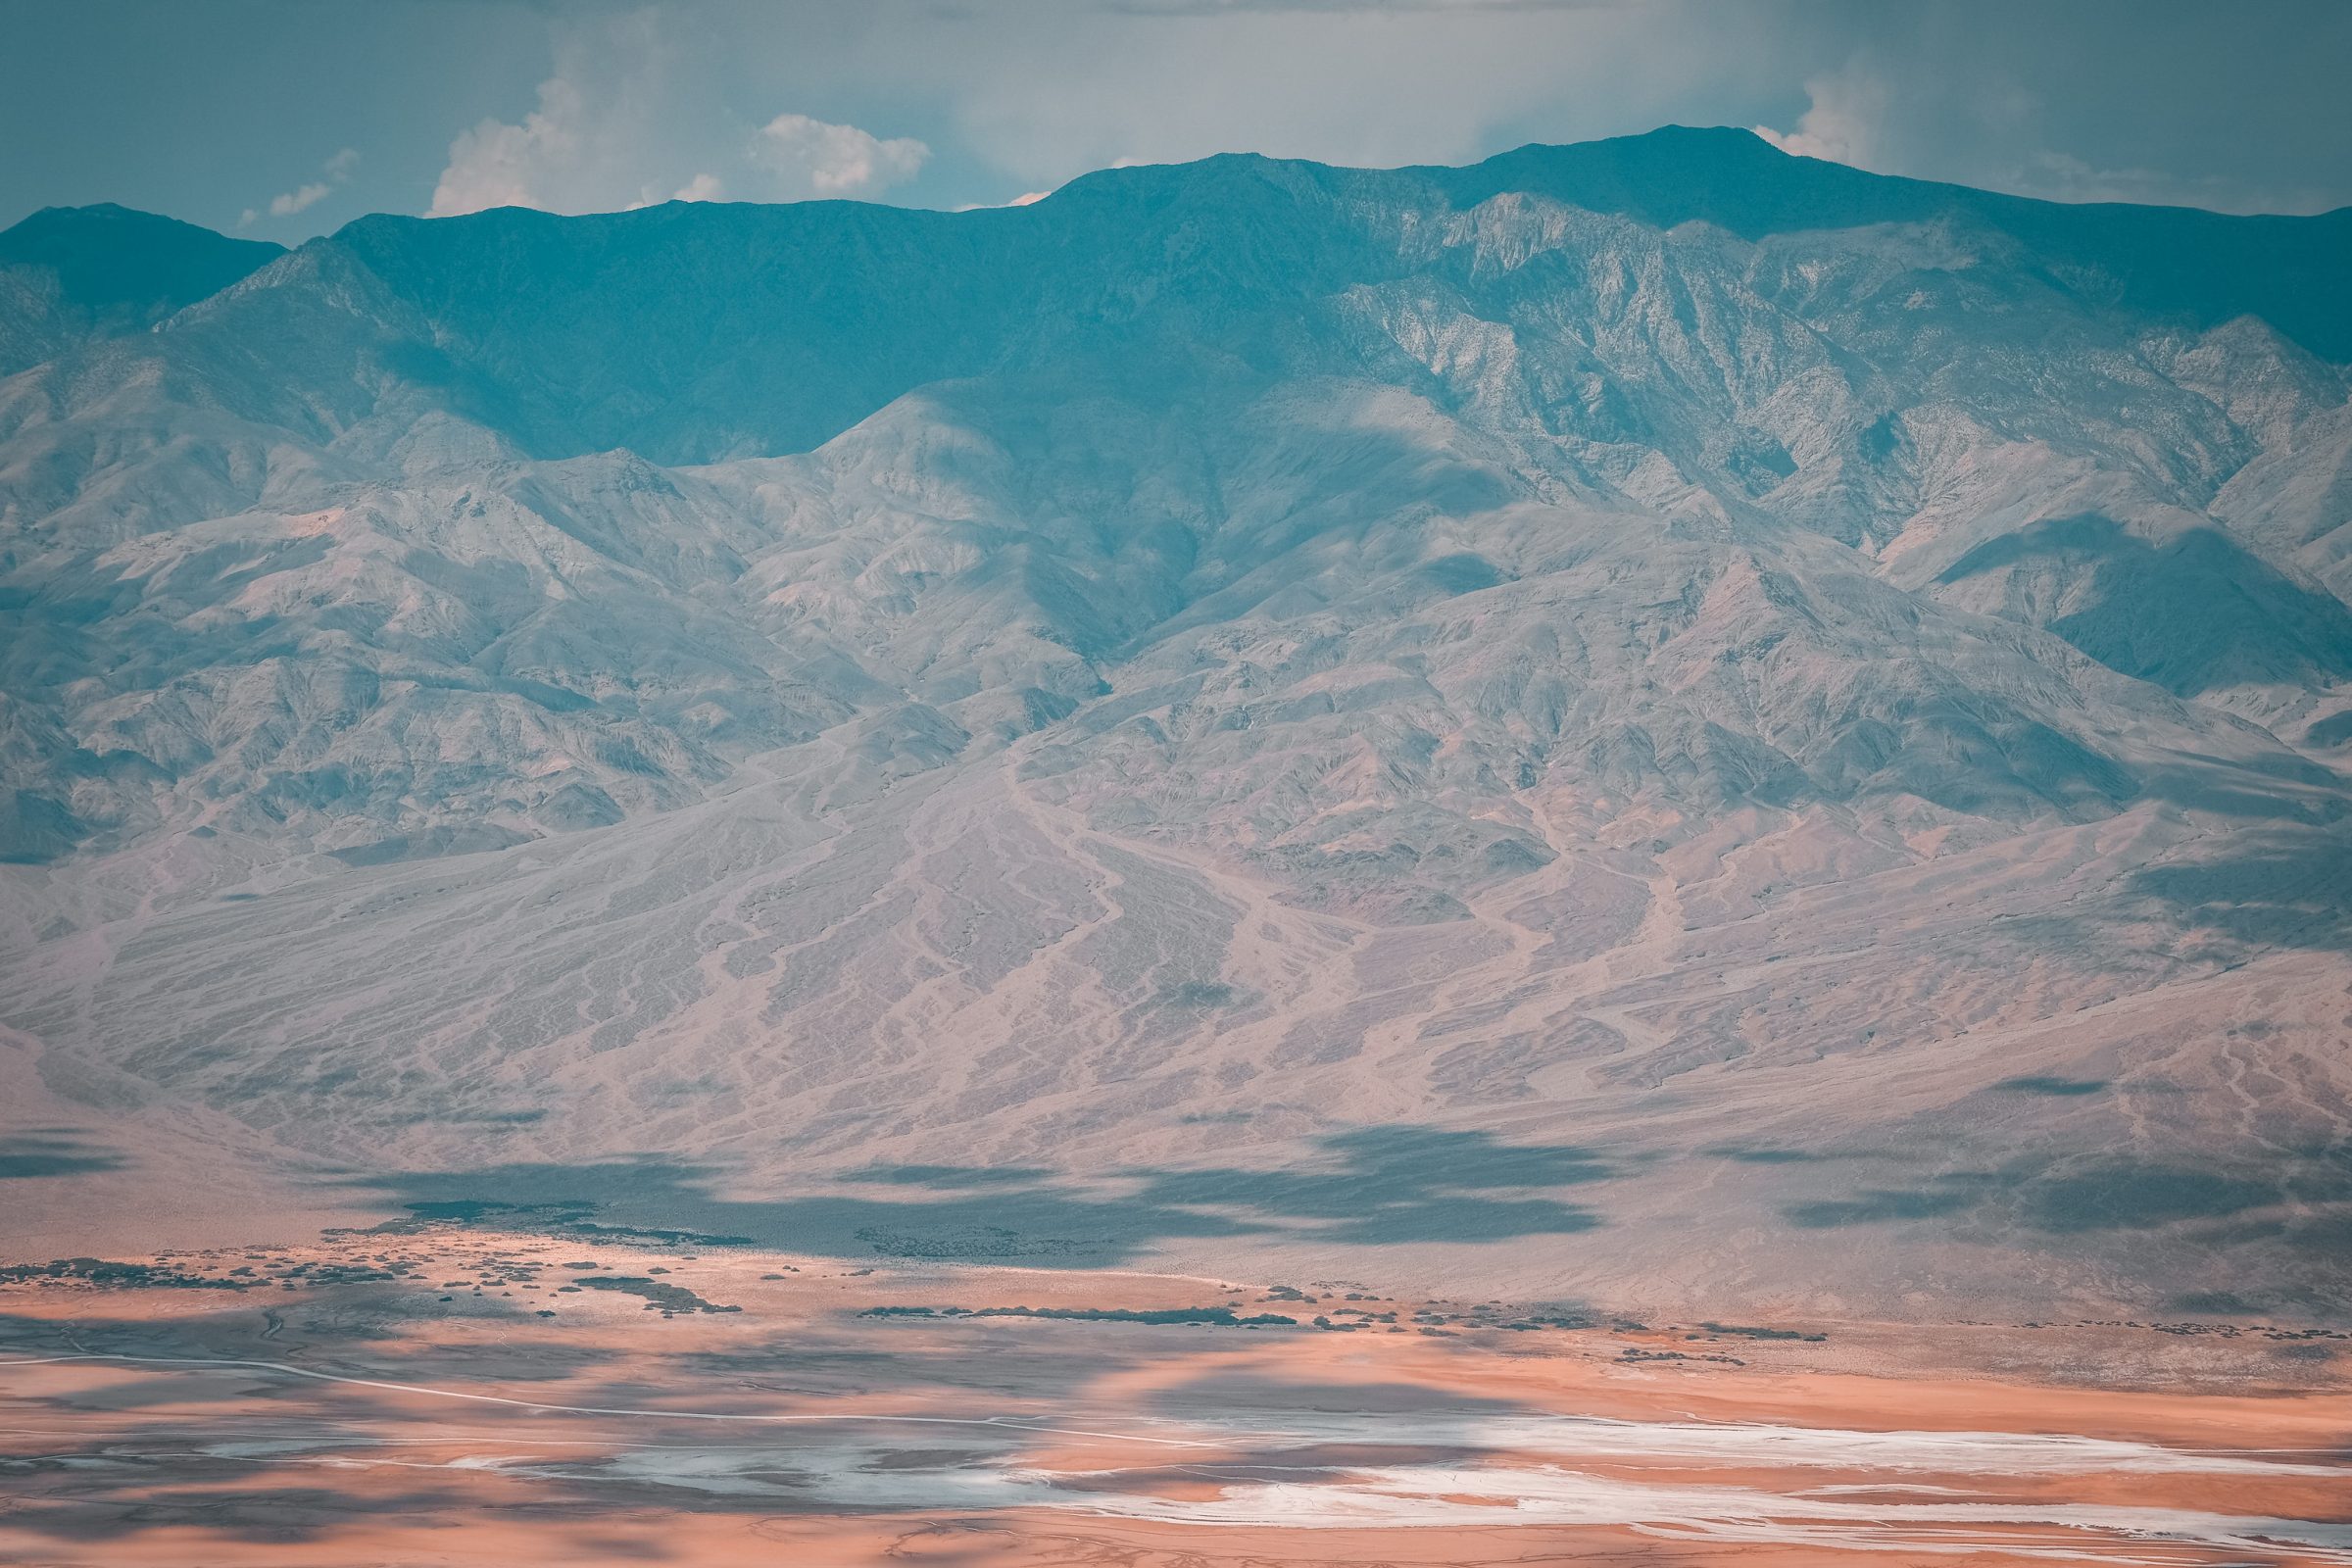 TelescopePeak | Dicas para o Parque Nacional do Vale da Morte